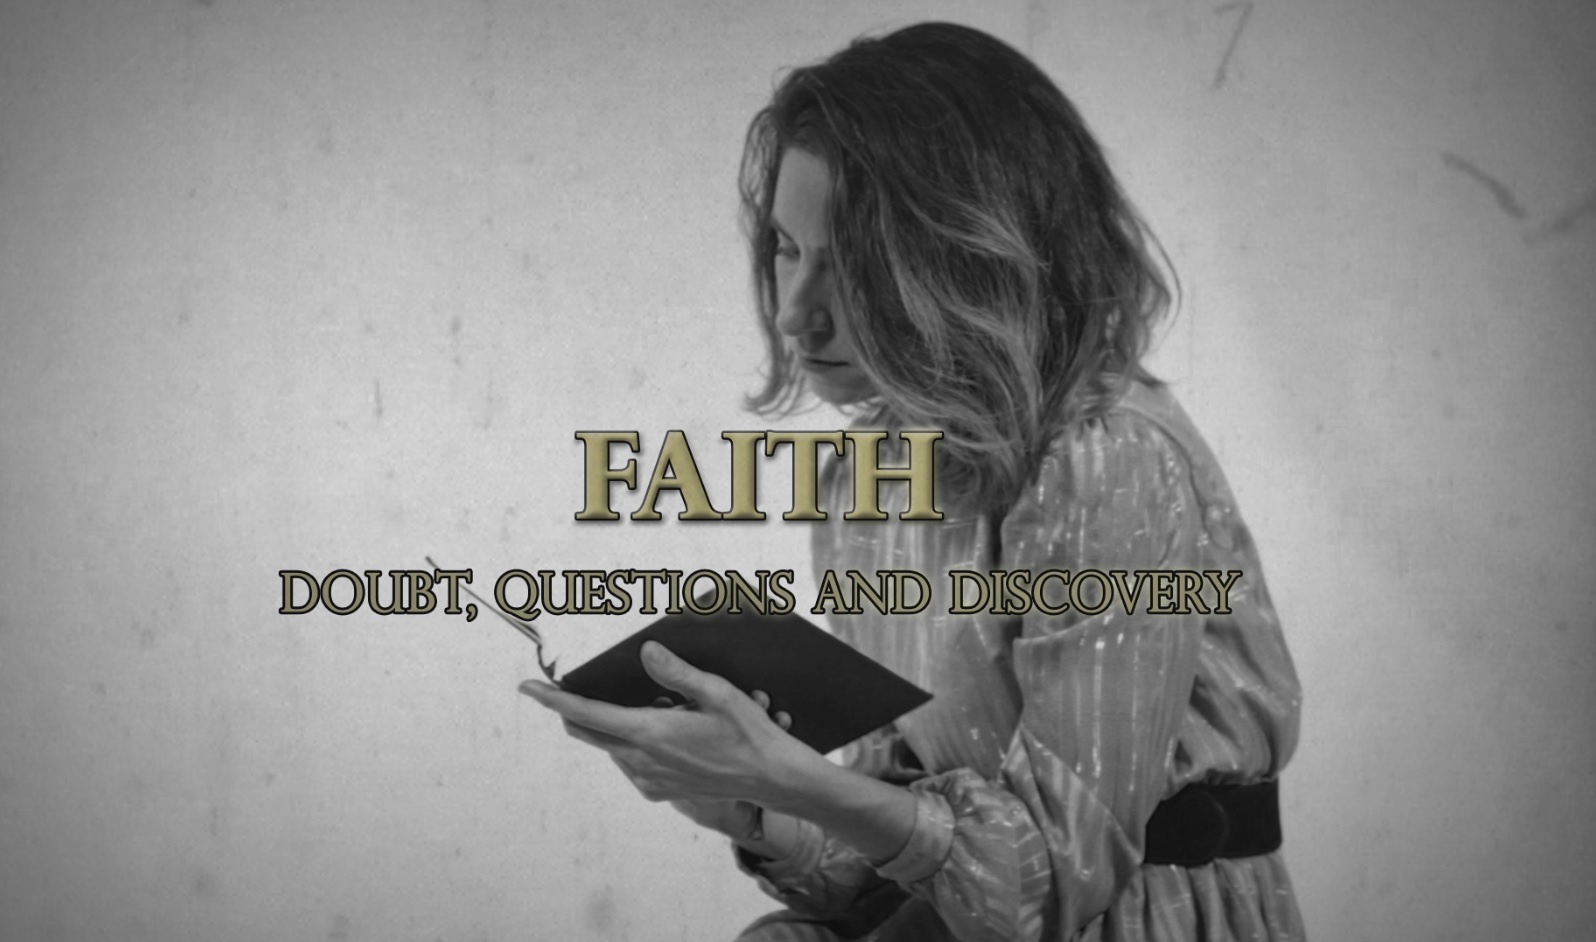 عقیدہ - شق، سوالات اور دریافت - مسیحیت میں سچائی عقیدہ - یسوع پر ایمان رکھنا